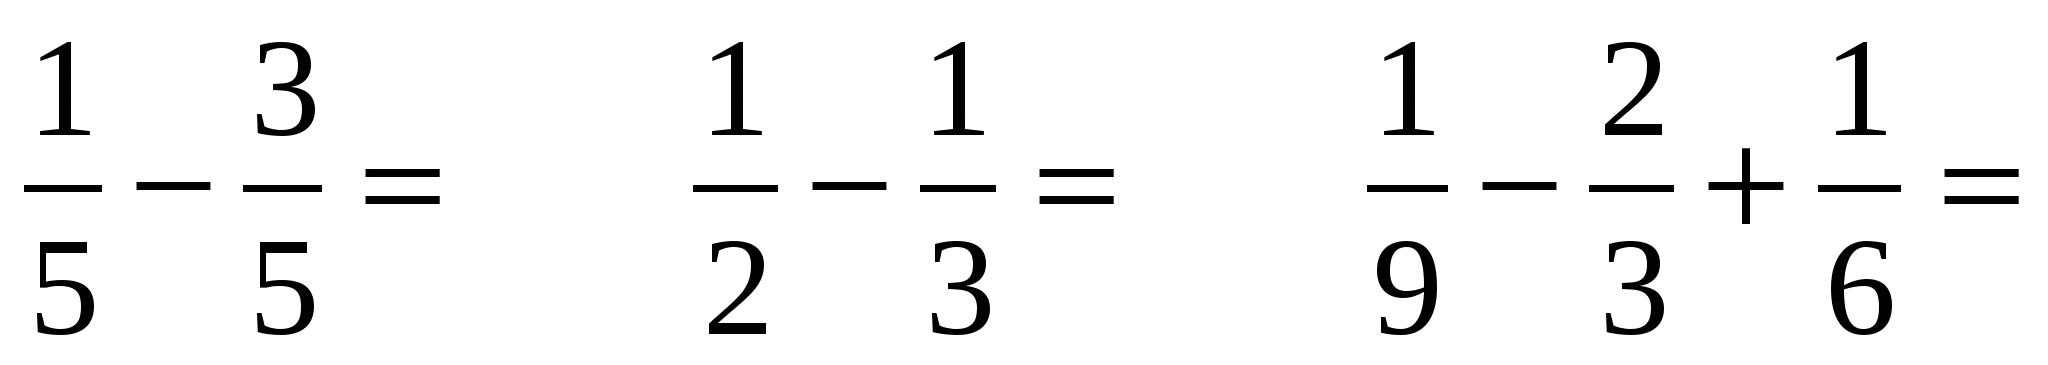 Формула Лейбница для пи. Формула Лейбница для числа пи. Формула Лейбница для вычисления π. Ряды Лейбница число пи формула.